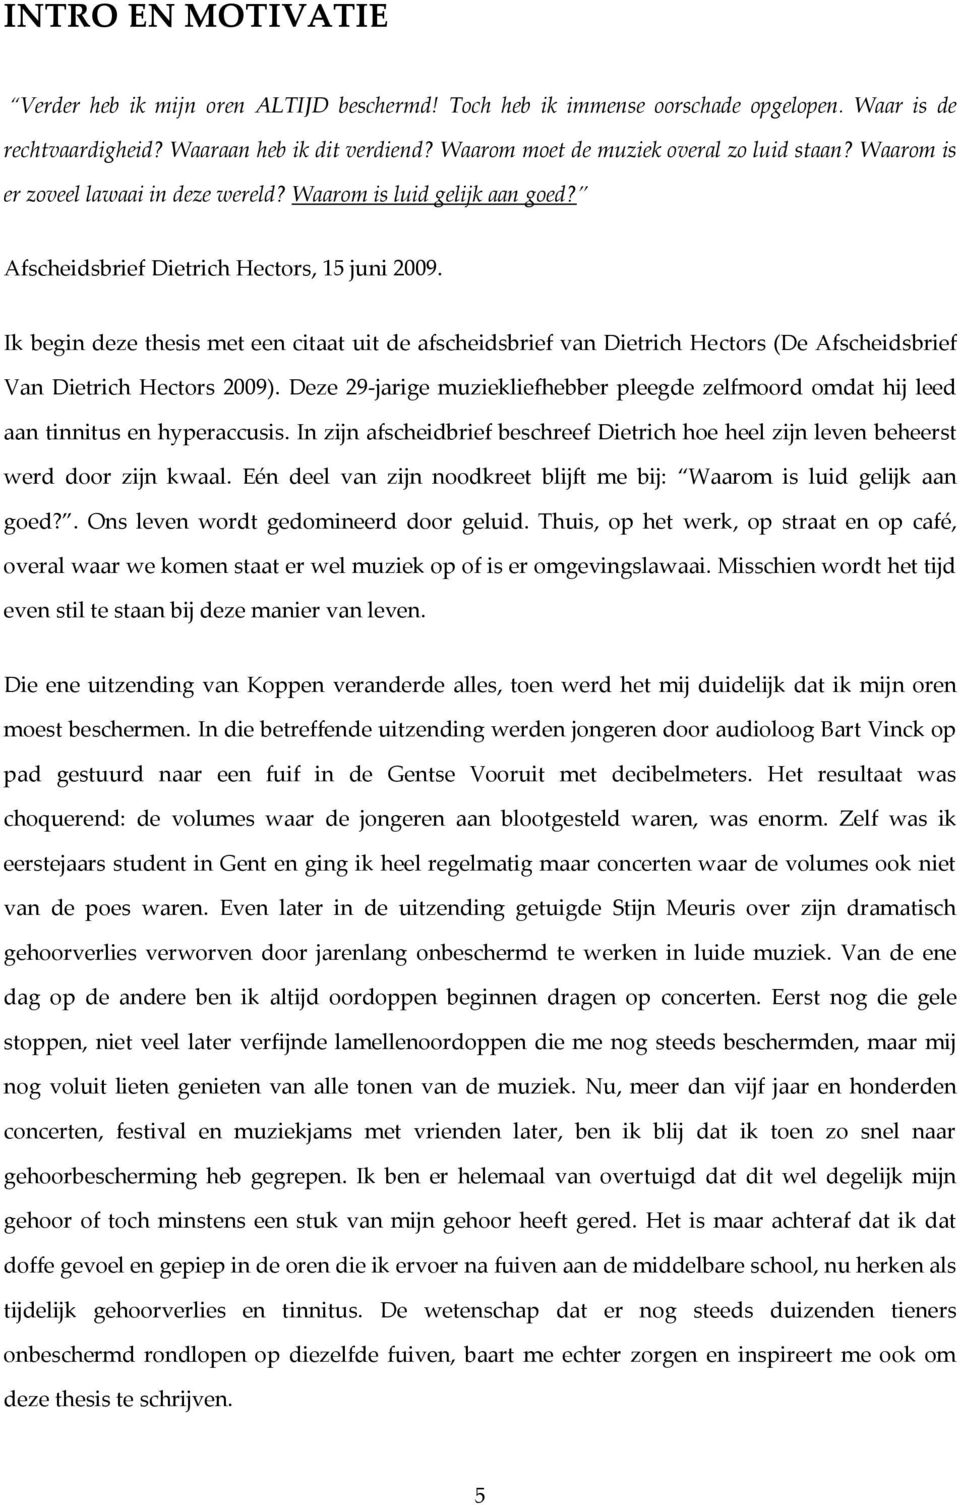 Ik begin deze thesis met een citaat uit de afscheidsbrief van Dietrich Hectors (De Afscheidsbrief Van Dietrich Hectors 2009).